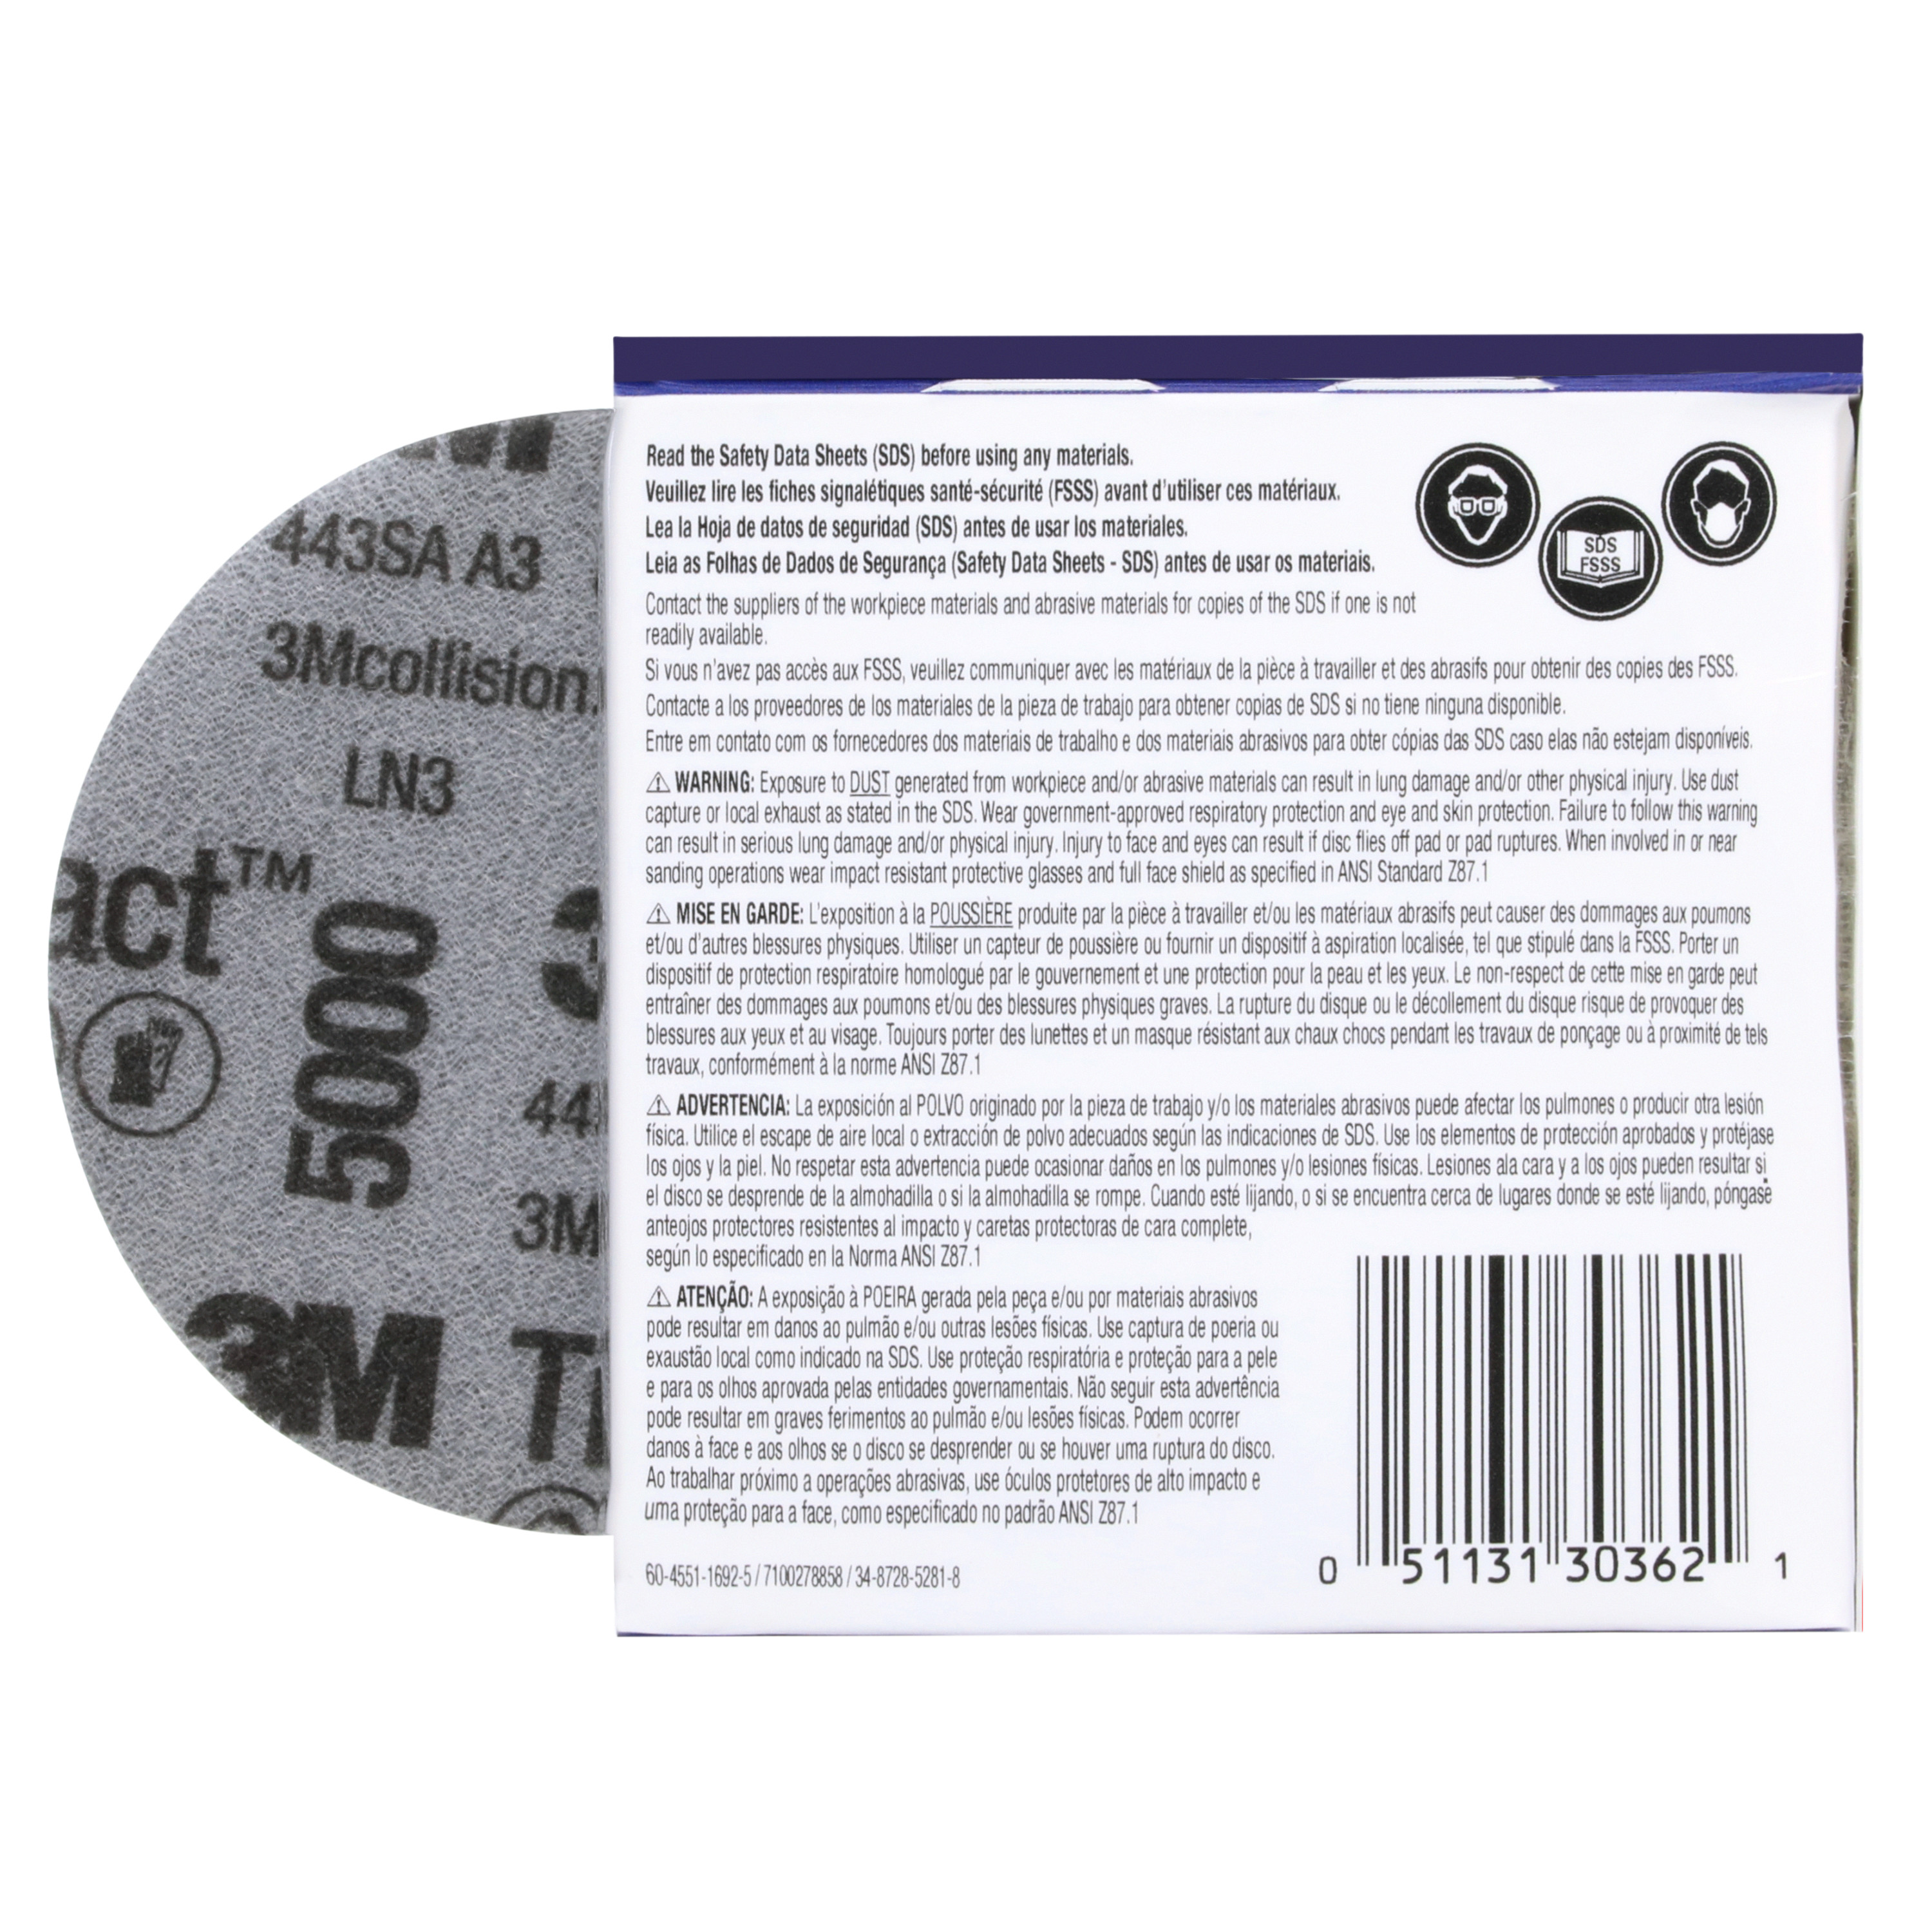 SKU 7000120106 | 3M™ Trizact™ Hookit™ Foam Abrasive Disc 30362